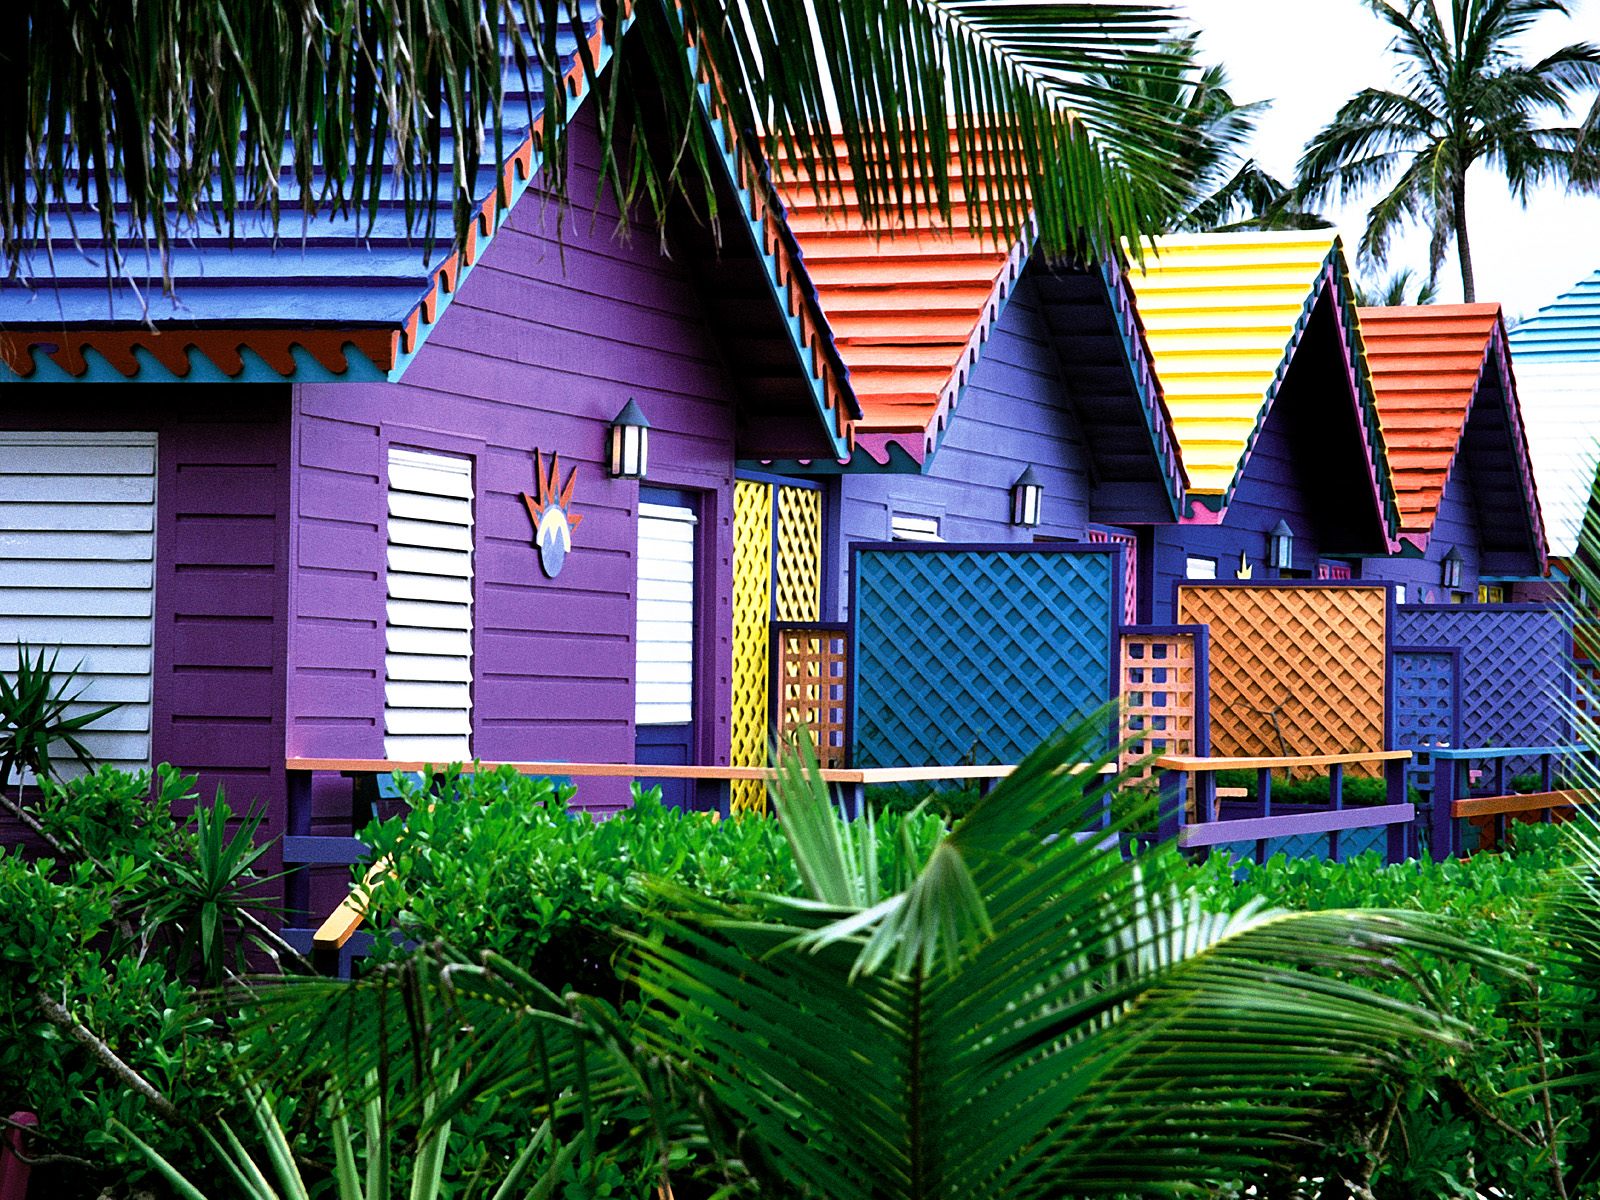 Colorful Houses, Bahamas691188307 - Colorful Houses, Bahamas - Netherlands, Houses, Colorful, Bahamas